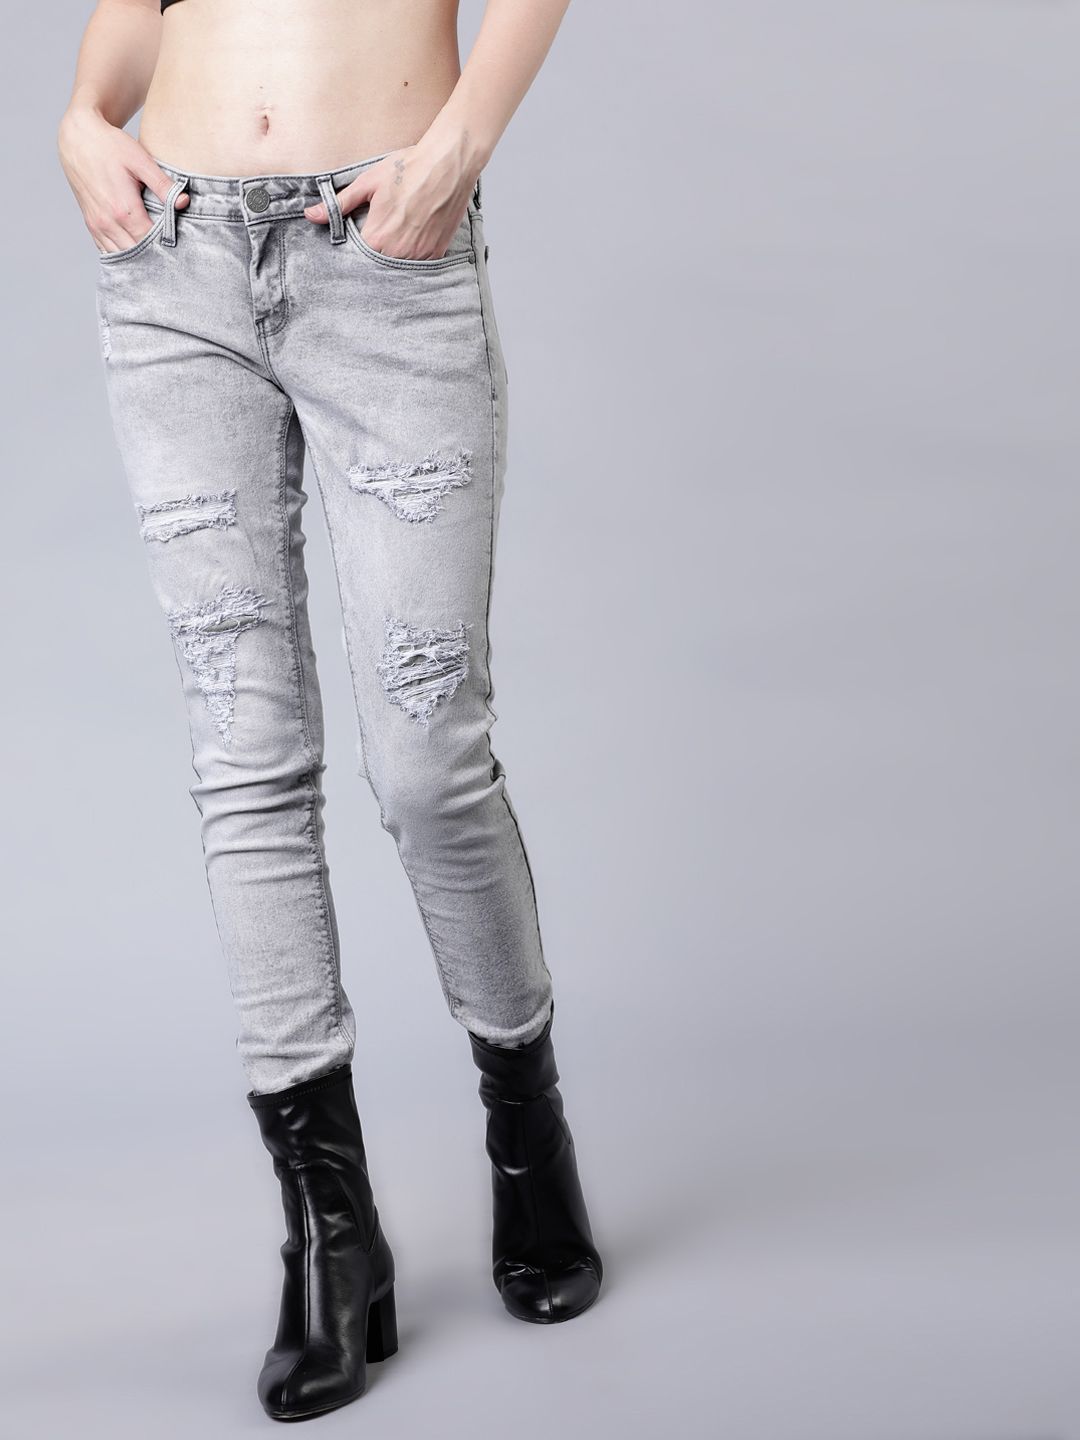 tokyo talkies women jeans